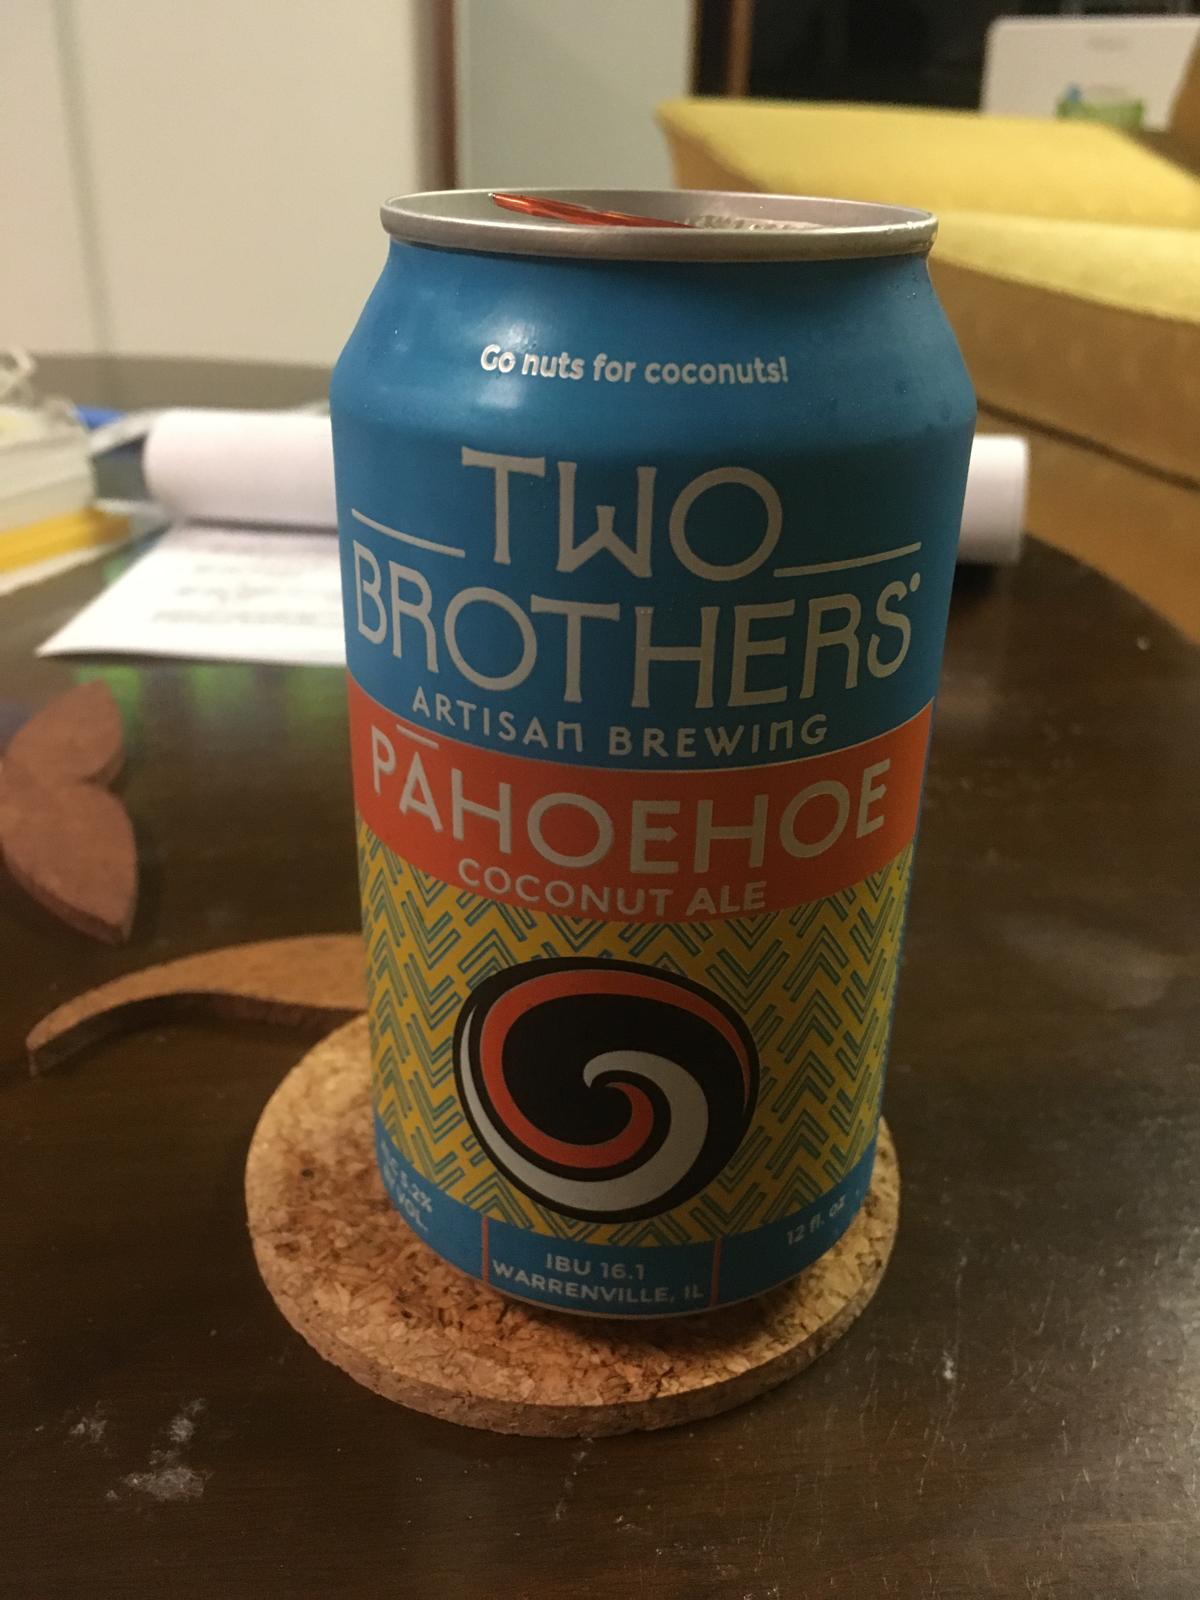 Pāhoehoe Coconut Ale